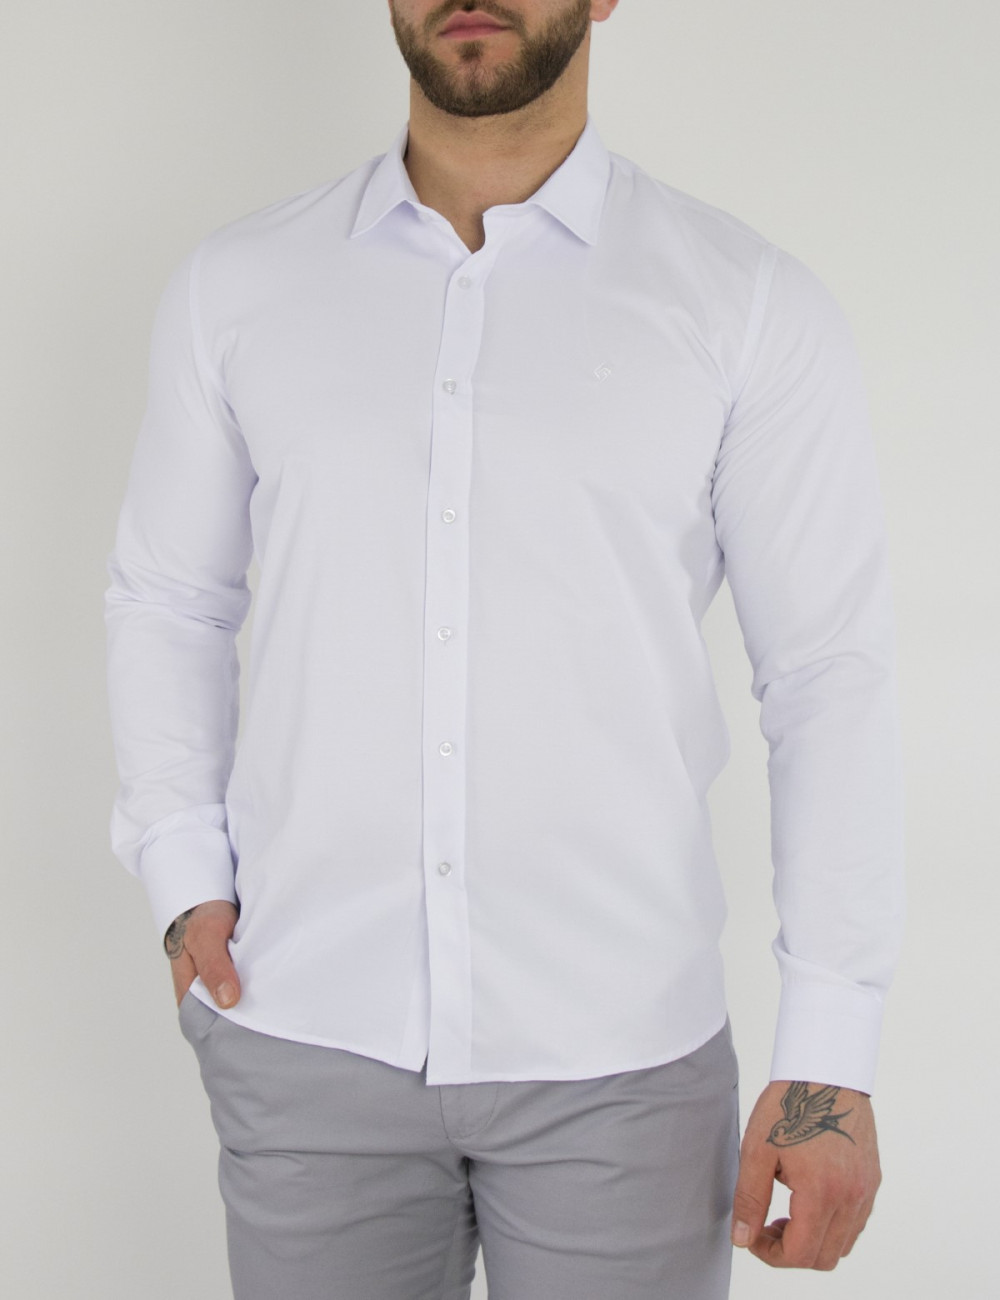 Ανδρικό βαμβακερό λευκό πουκάμισο SL110